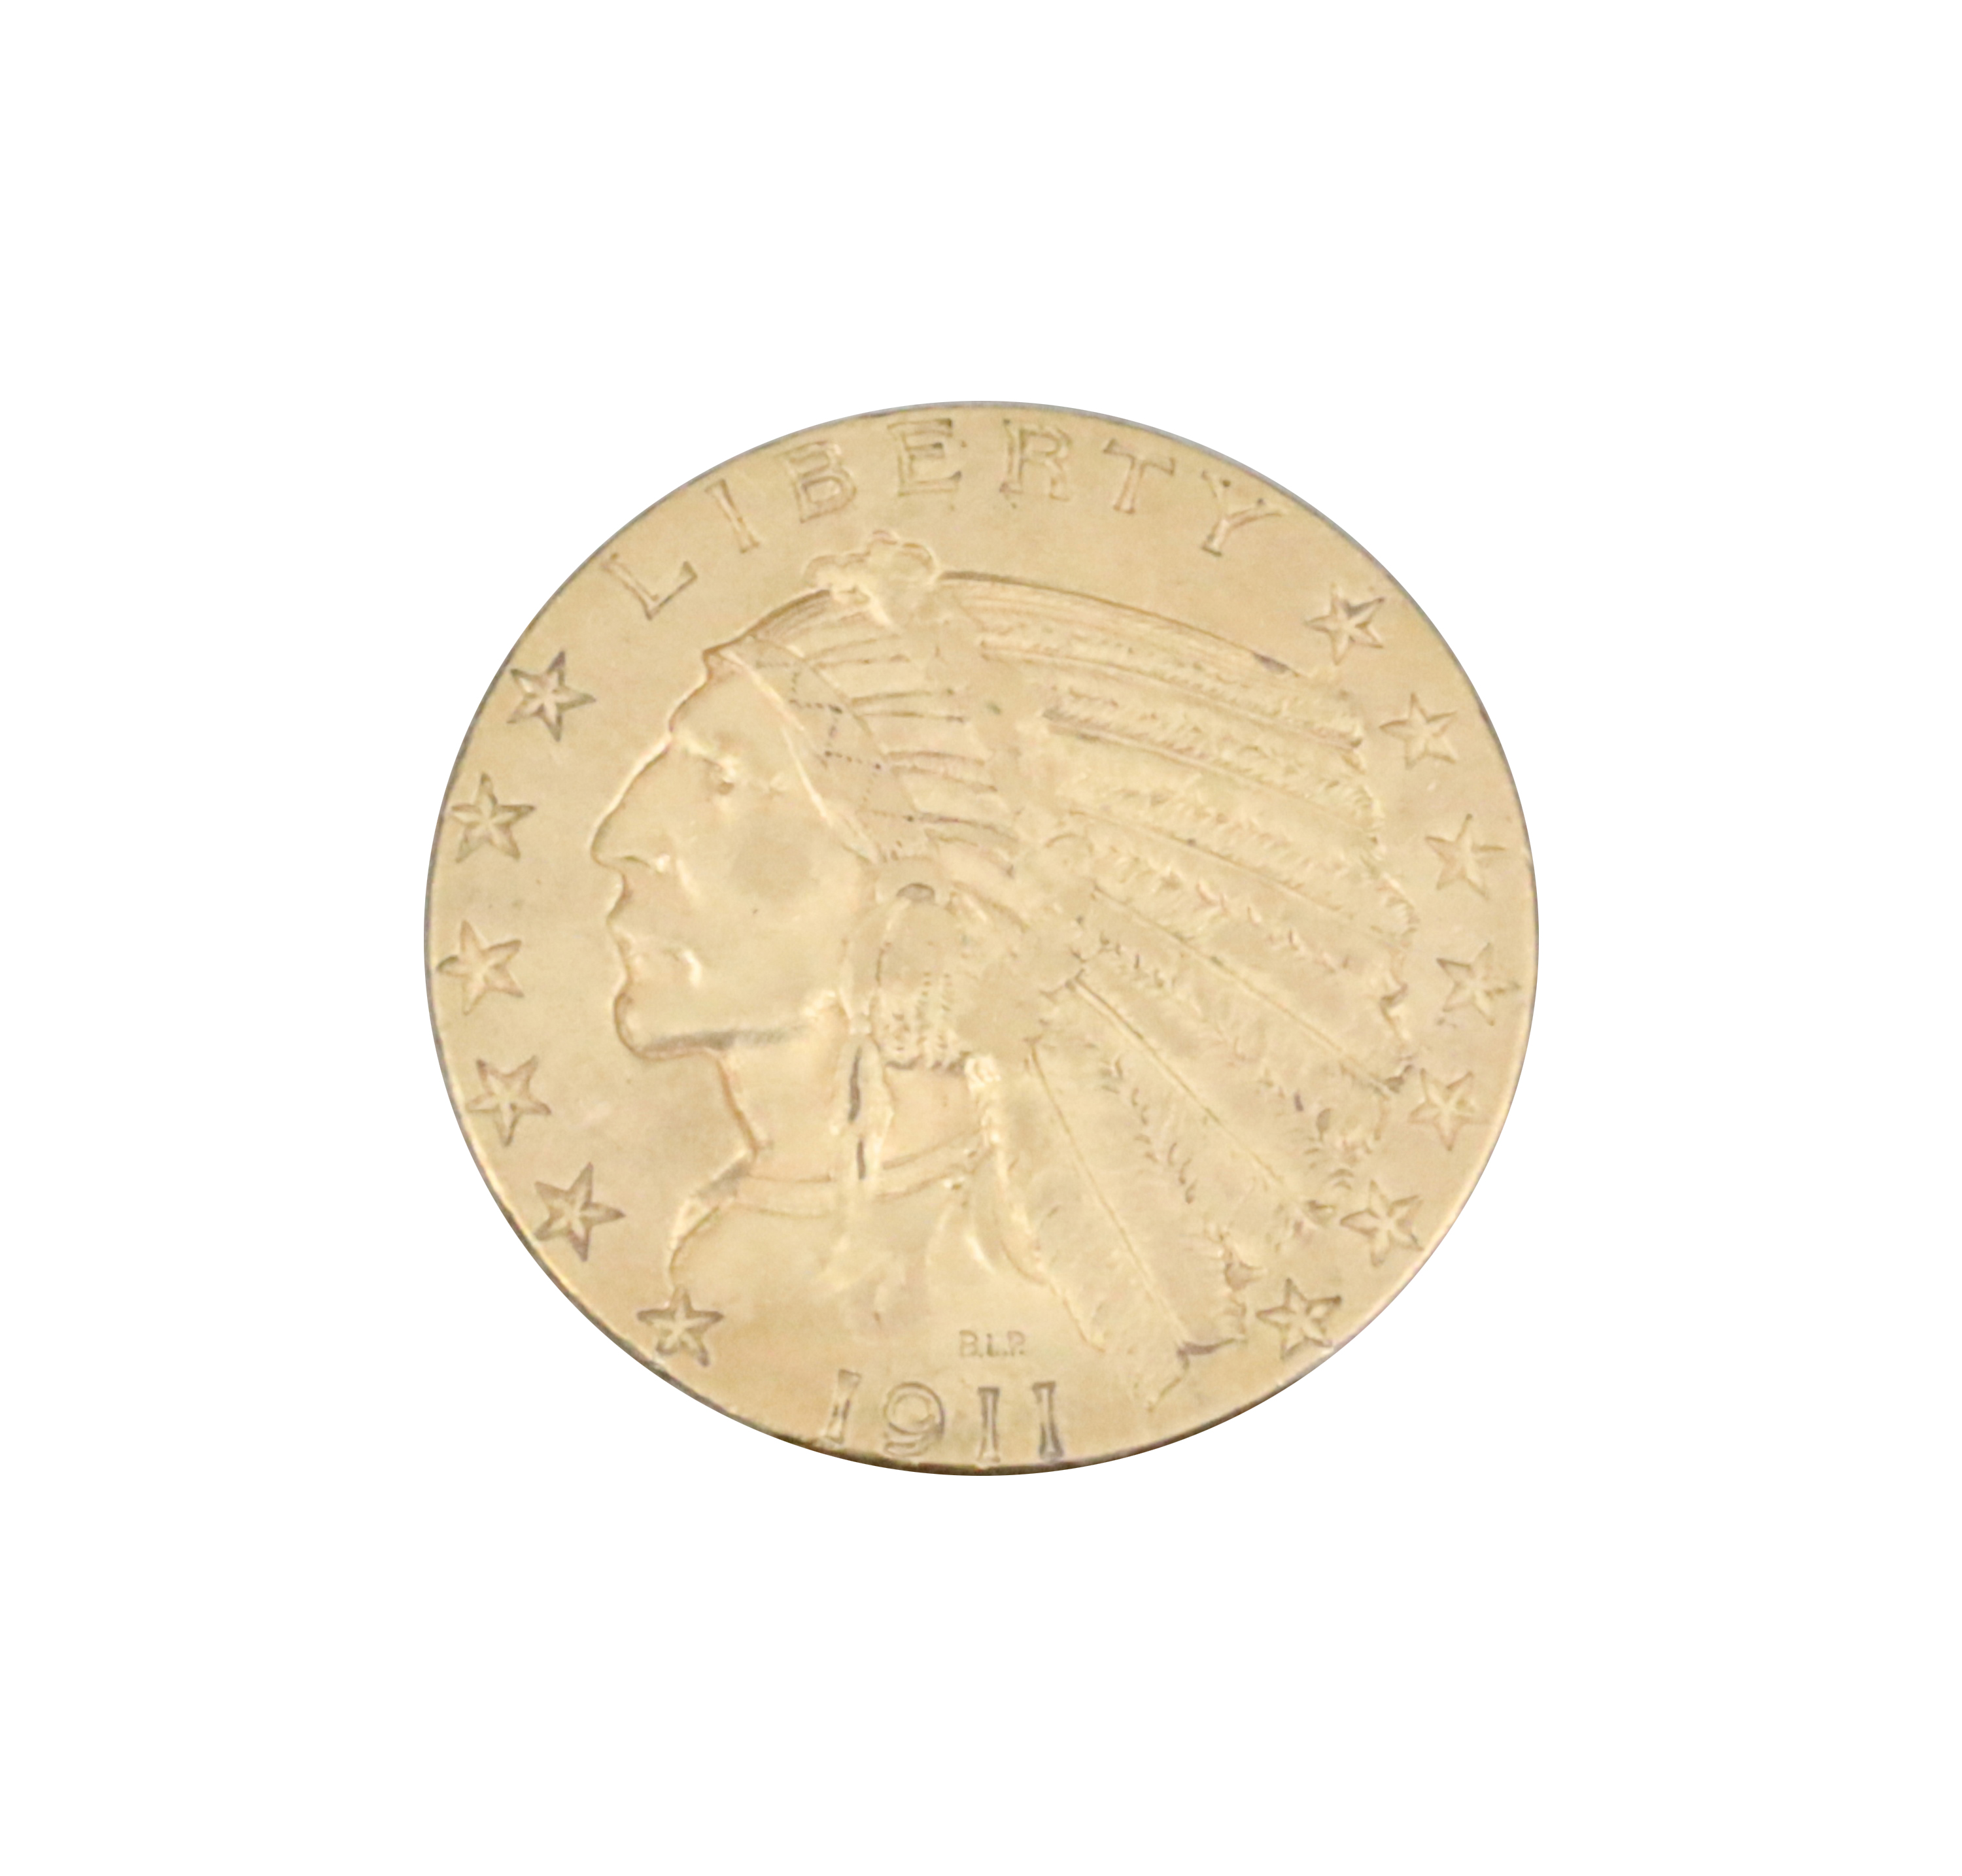 1911 AU53 5 INDIAN HEAD GOLD COIN 3b3ae9